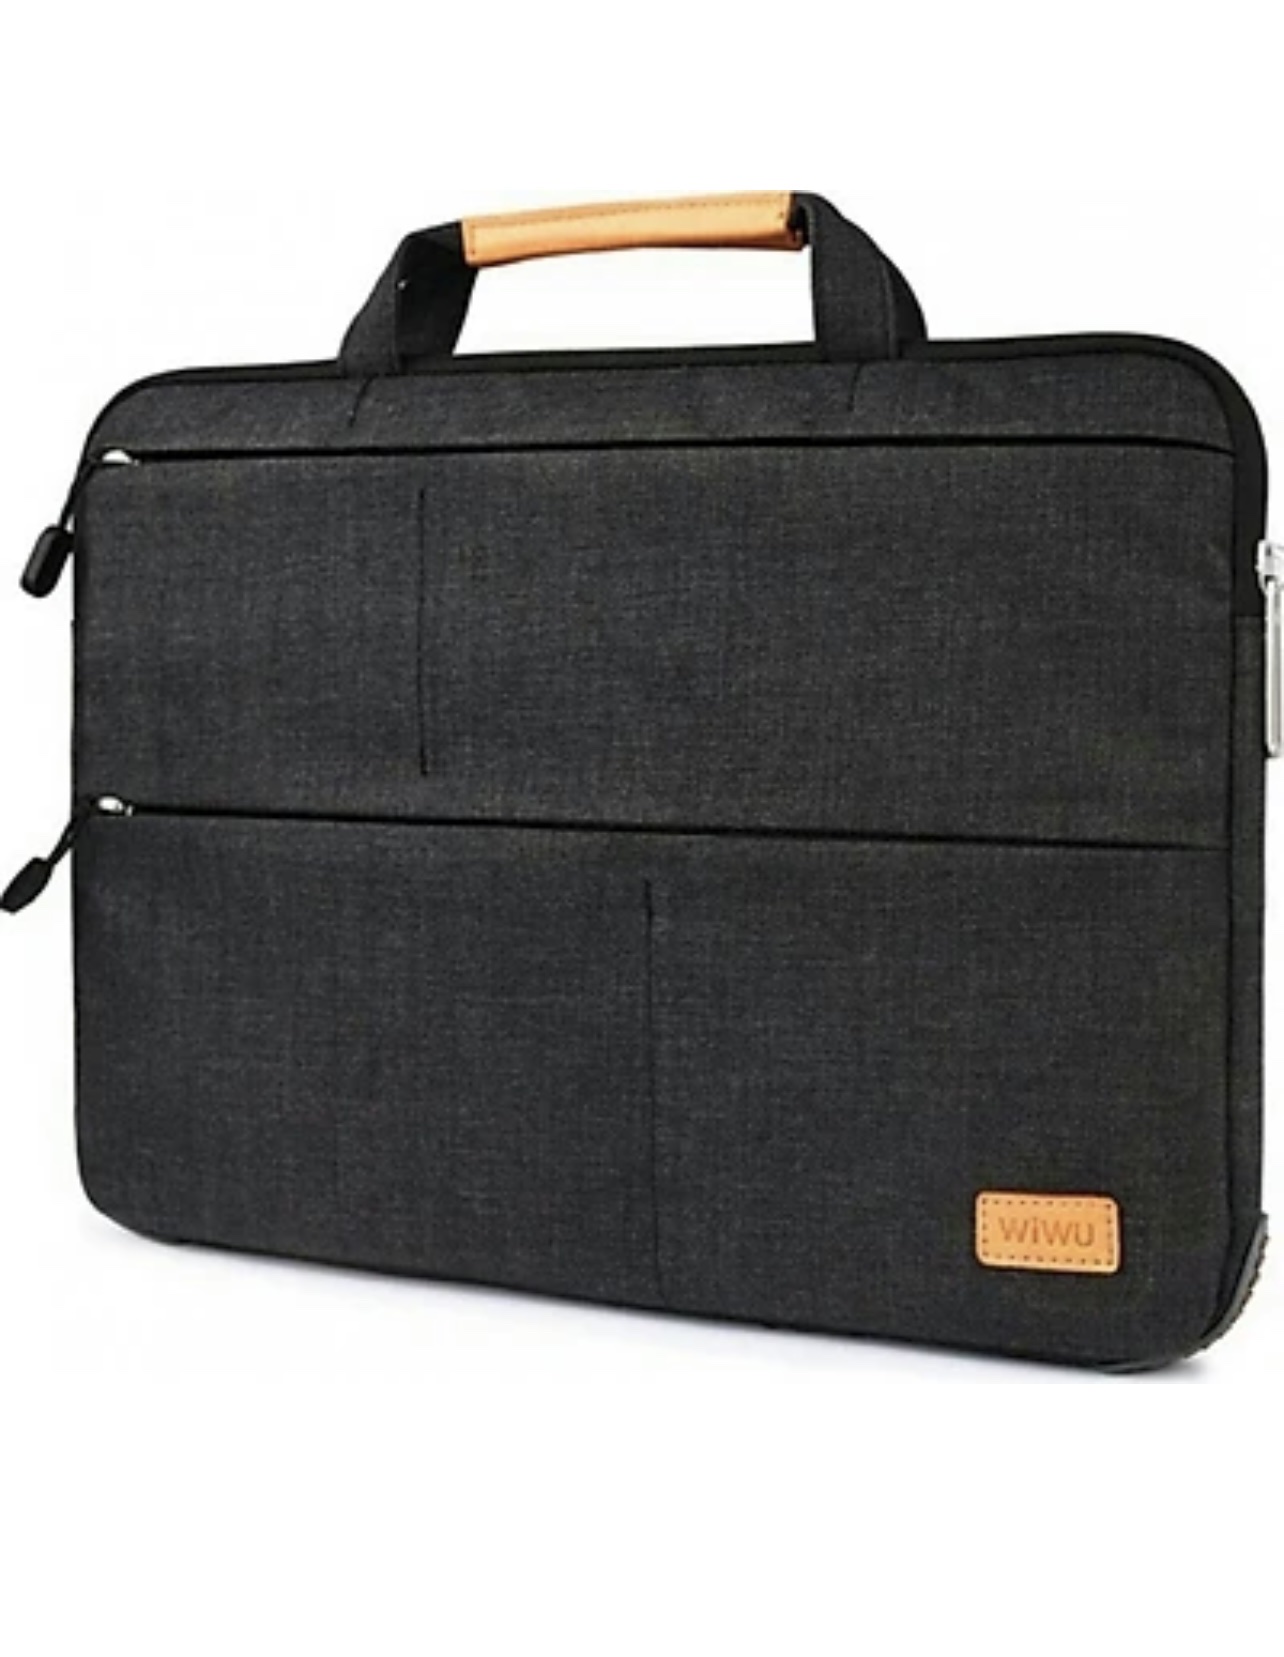 Túi Đựng Macbook Wiwu Smart Stand Sleeve 13.3 Dành Cho Macbook, Laptop Chất Liệu Vải Sợi Cao Cấp, Chống Sốc - Hàng Chính Hãng